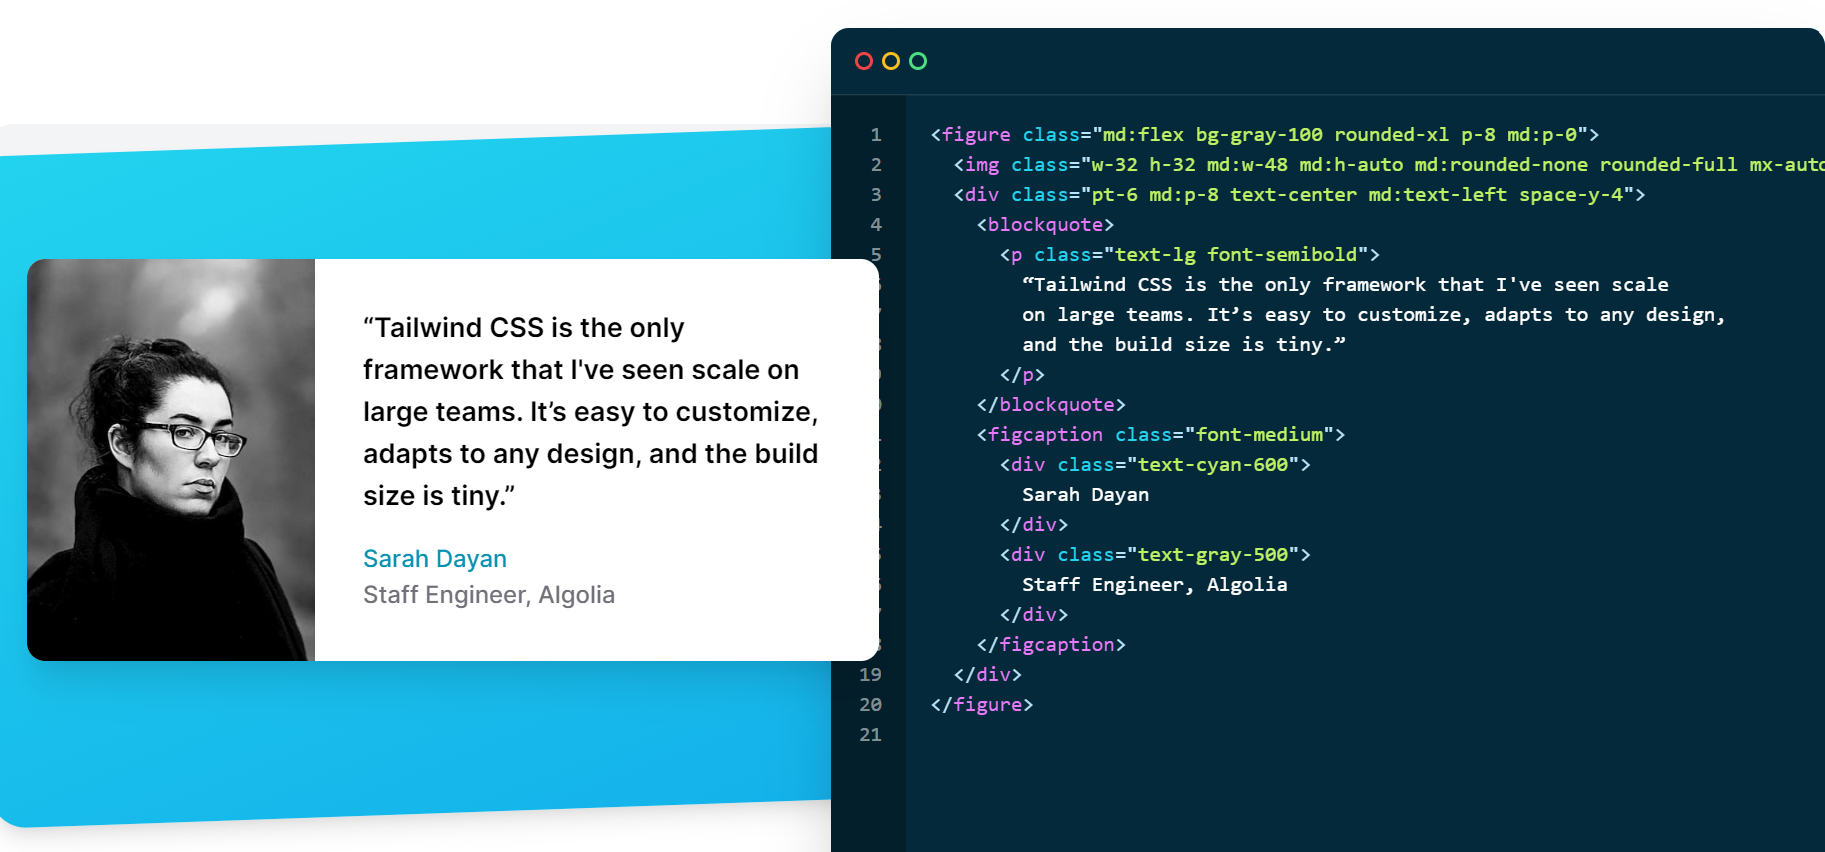 Tailwind CSS, müşterilerinden gelen gerçek referansları gösteriyor